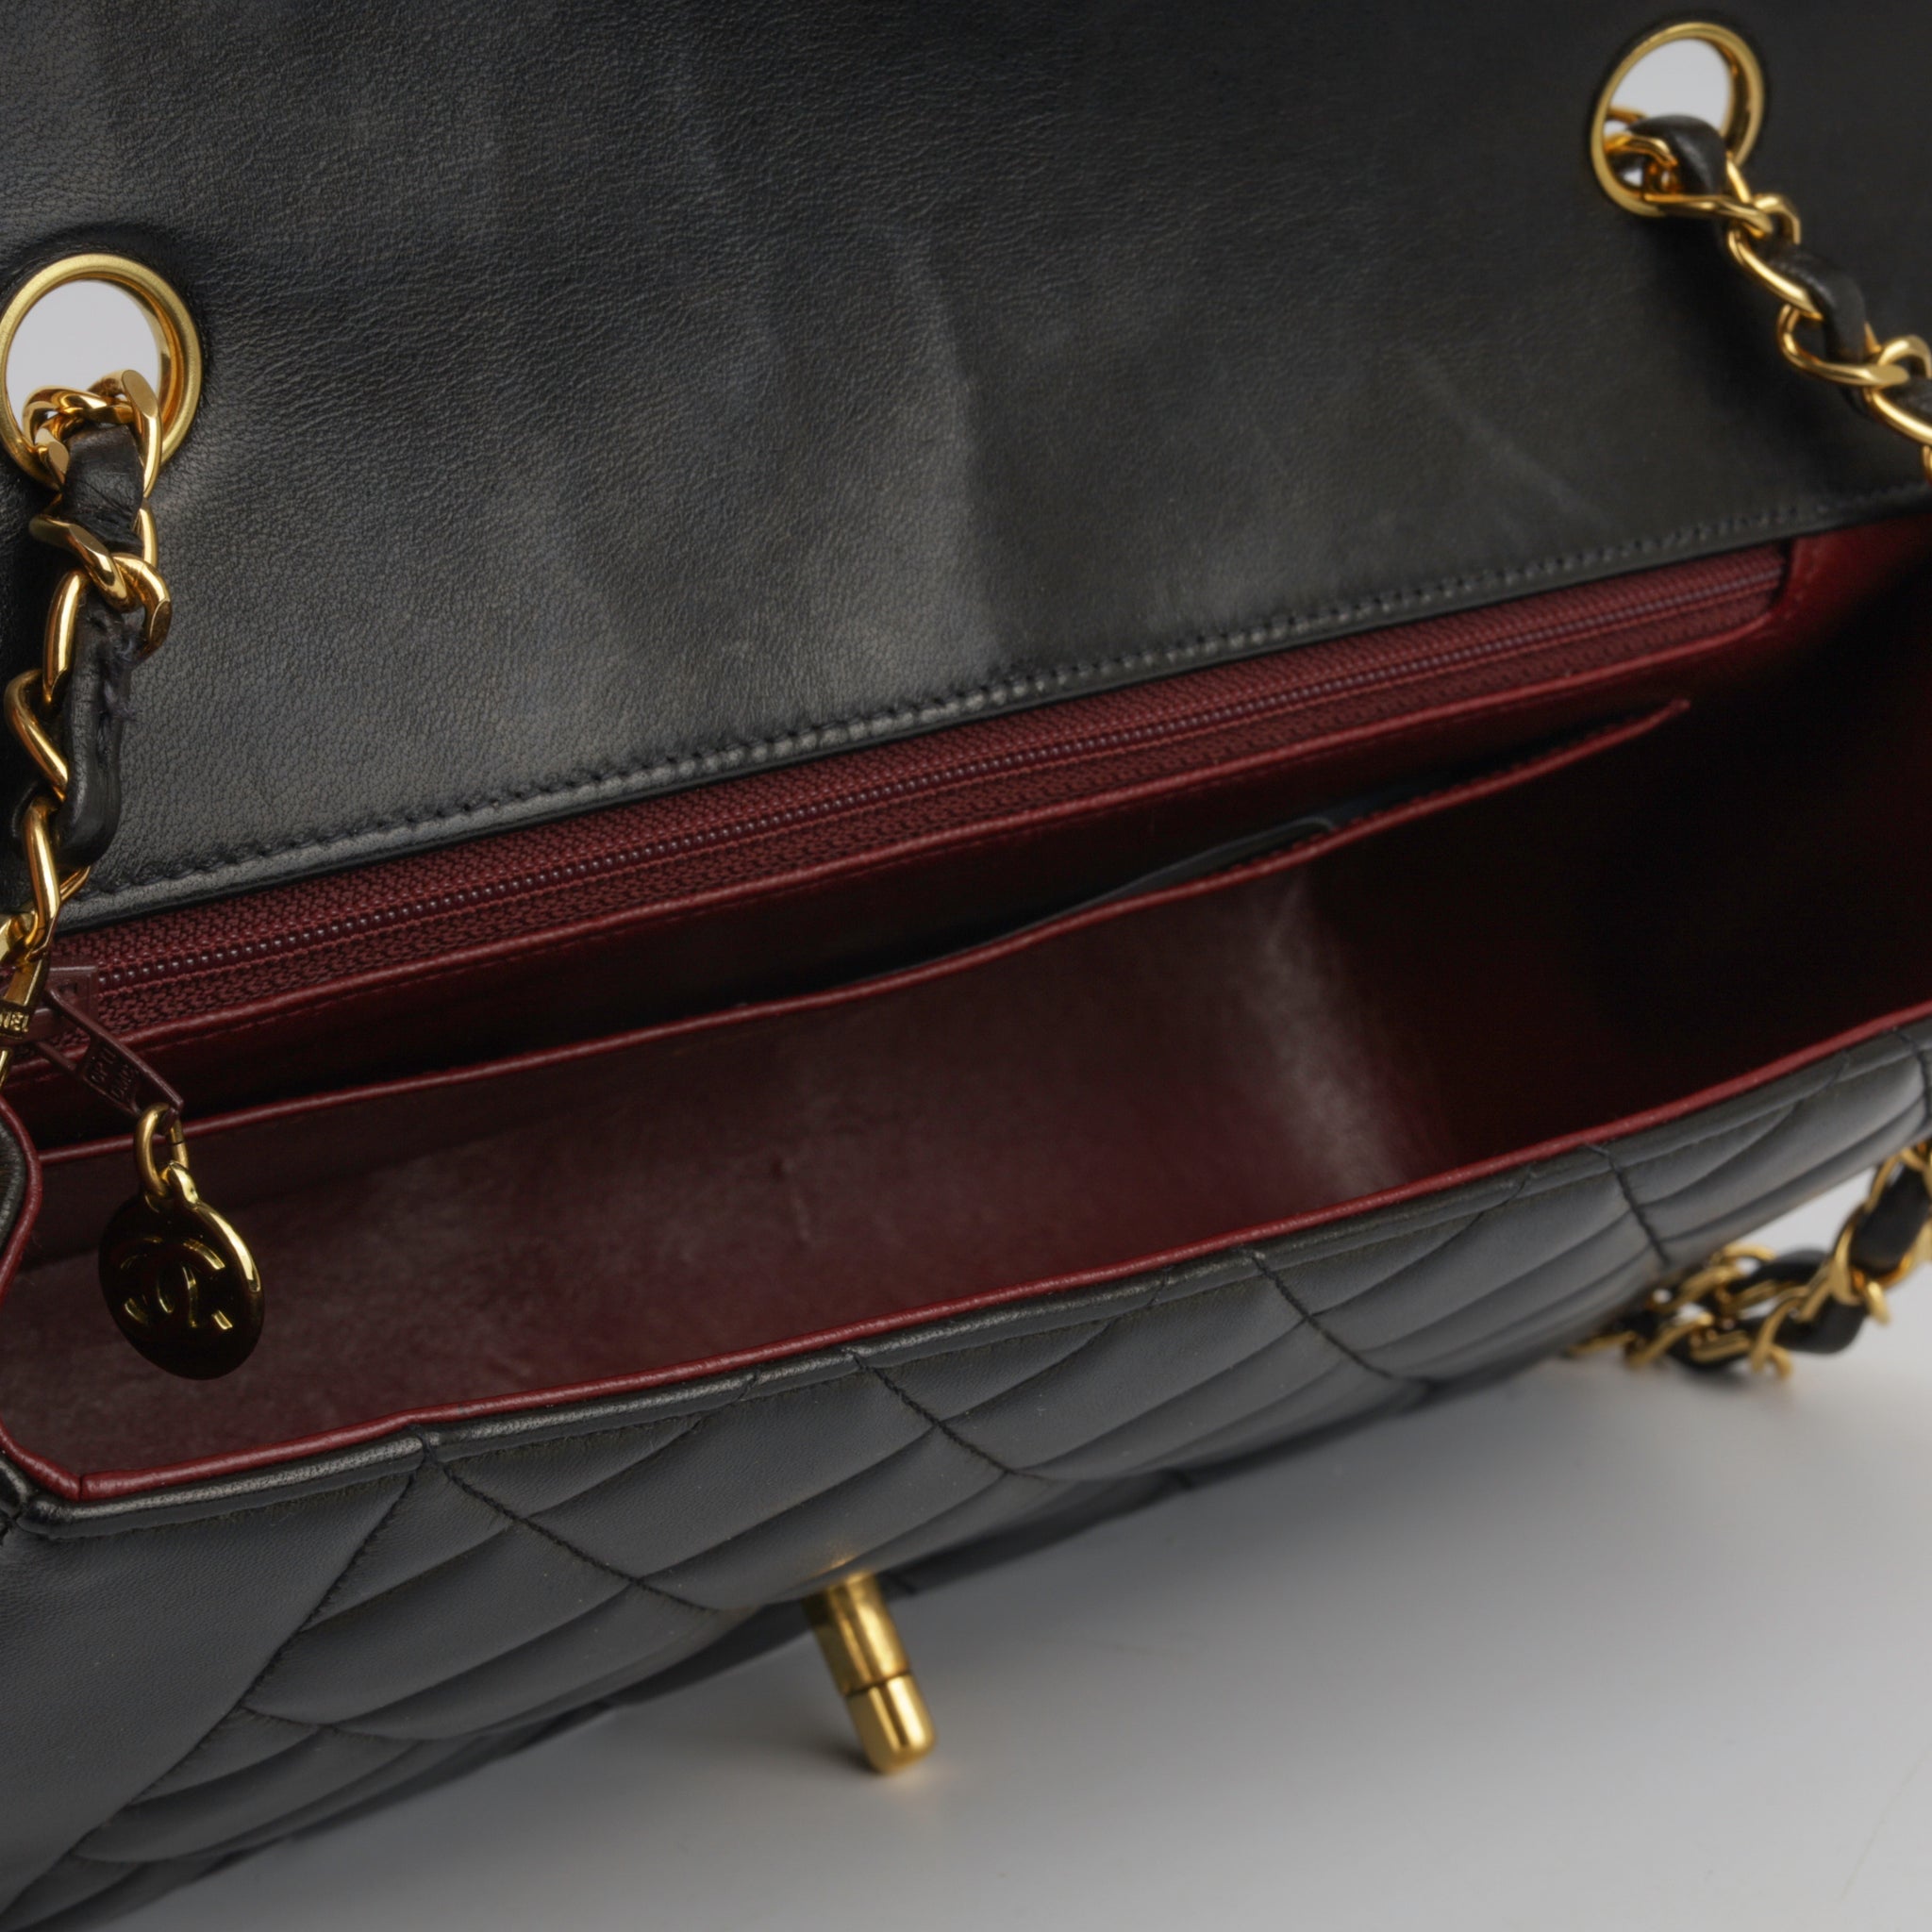 Chanel - Large Diana Flap Bag - Vintage - Black Lambskin - GHW